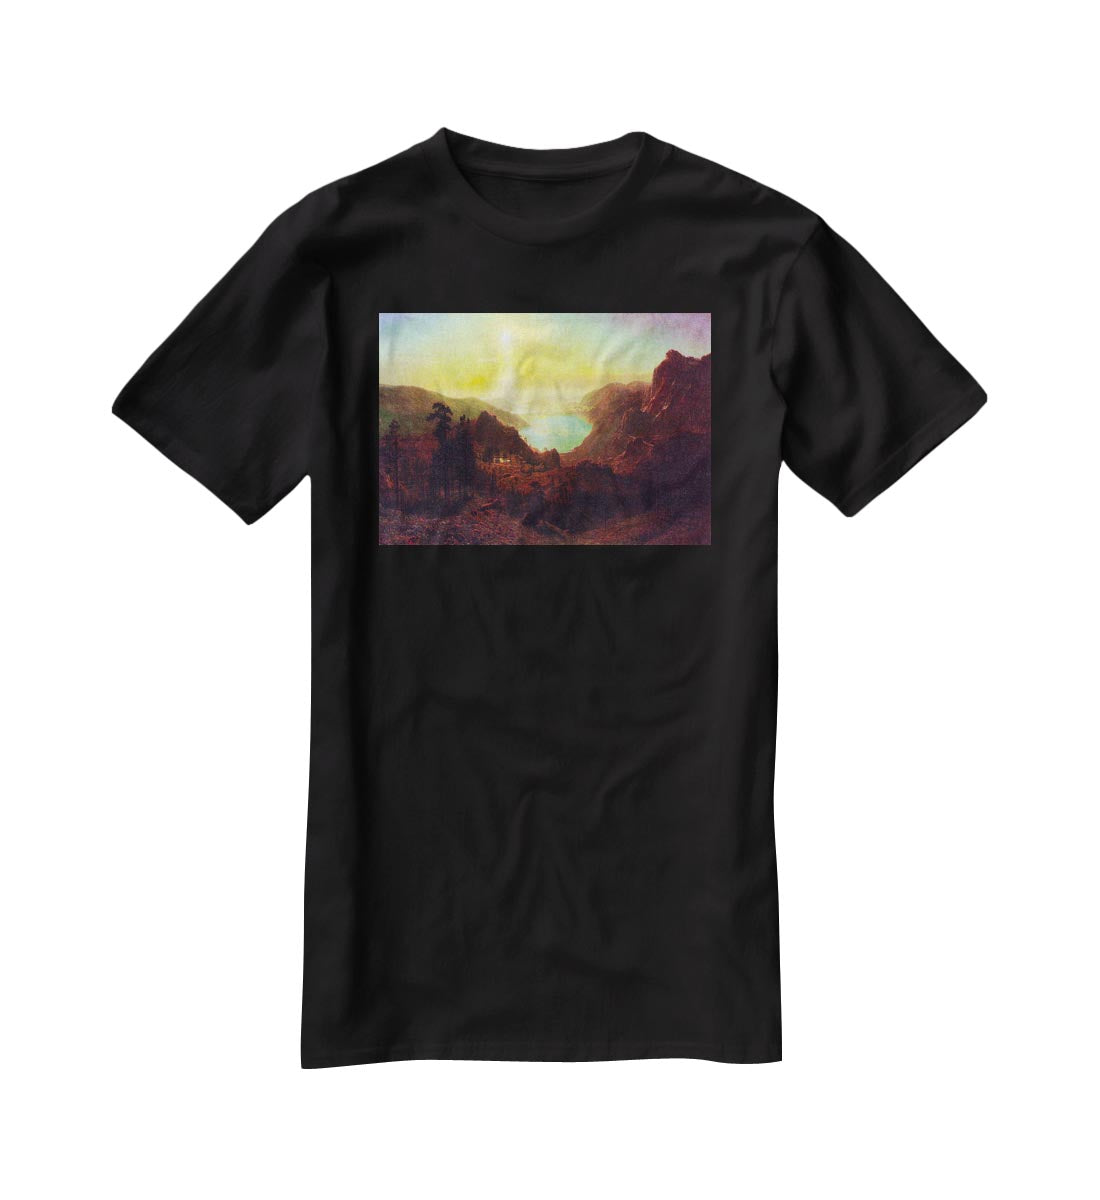 Donner Lake 2 by Bierstadt T-Shirt - Canvas Art Rocks - 1